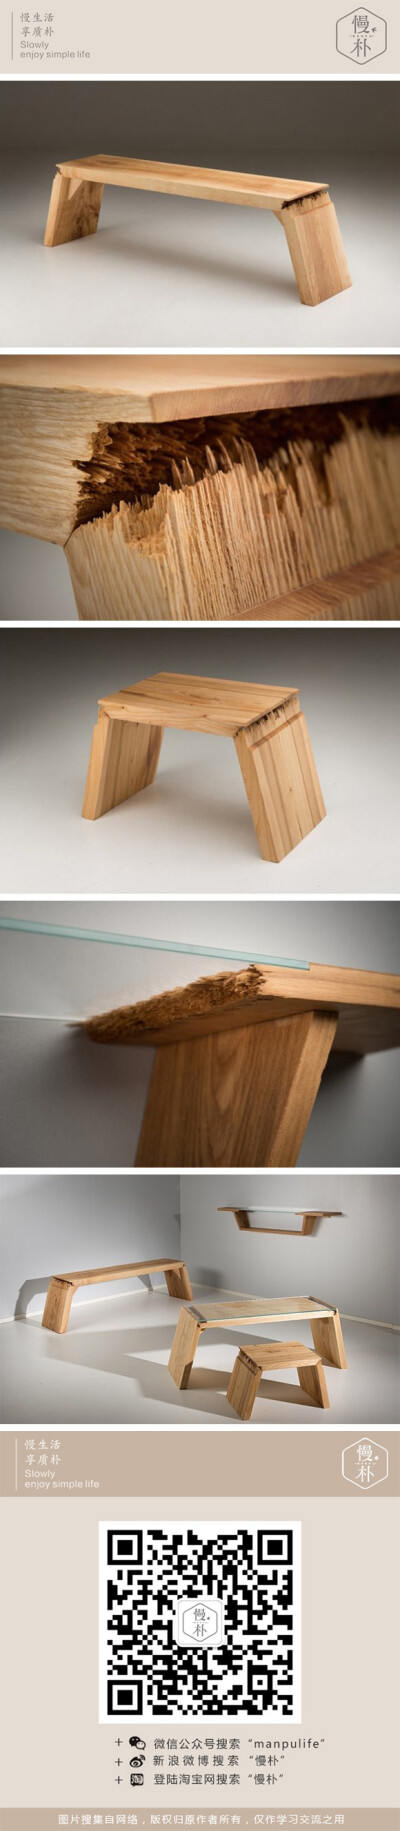 设计师 Jalmari Laihinen 设计了一组凳子，包括了一把长凳以及一把板凳。作为同一系列的作品，它们有着一处共通之处，即是在座椅的连接关节处的裂纹断裂了。这样的效果当然不可能是制作工艺上的马虎 ，设计师就是想…